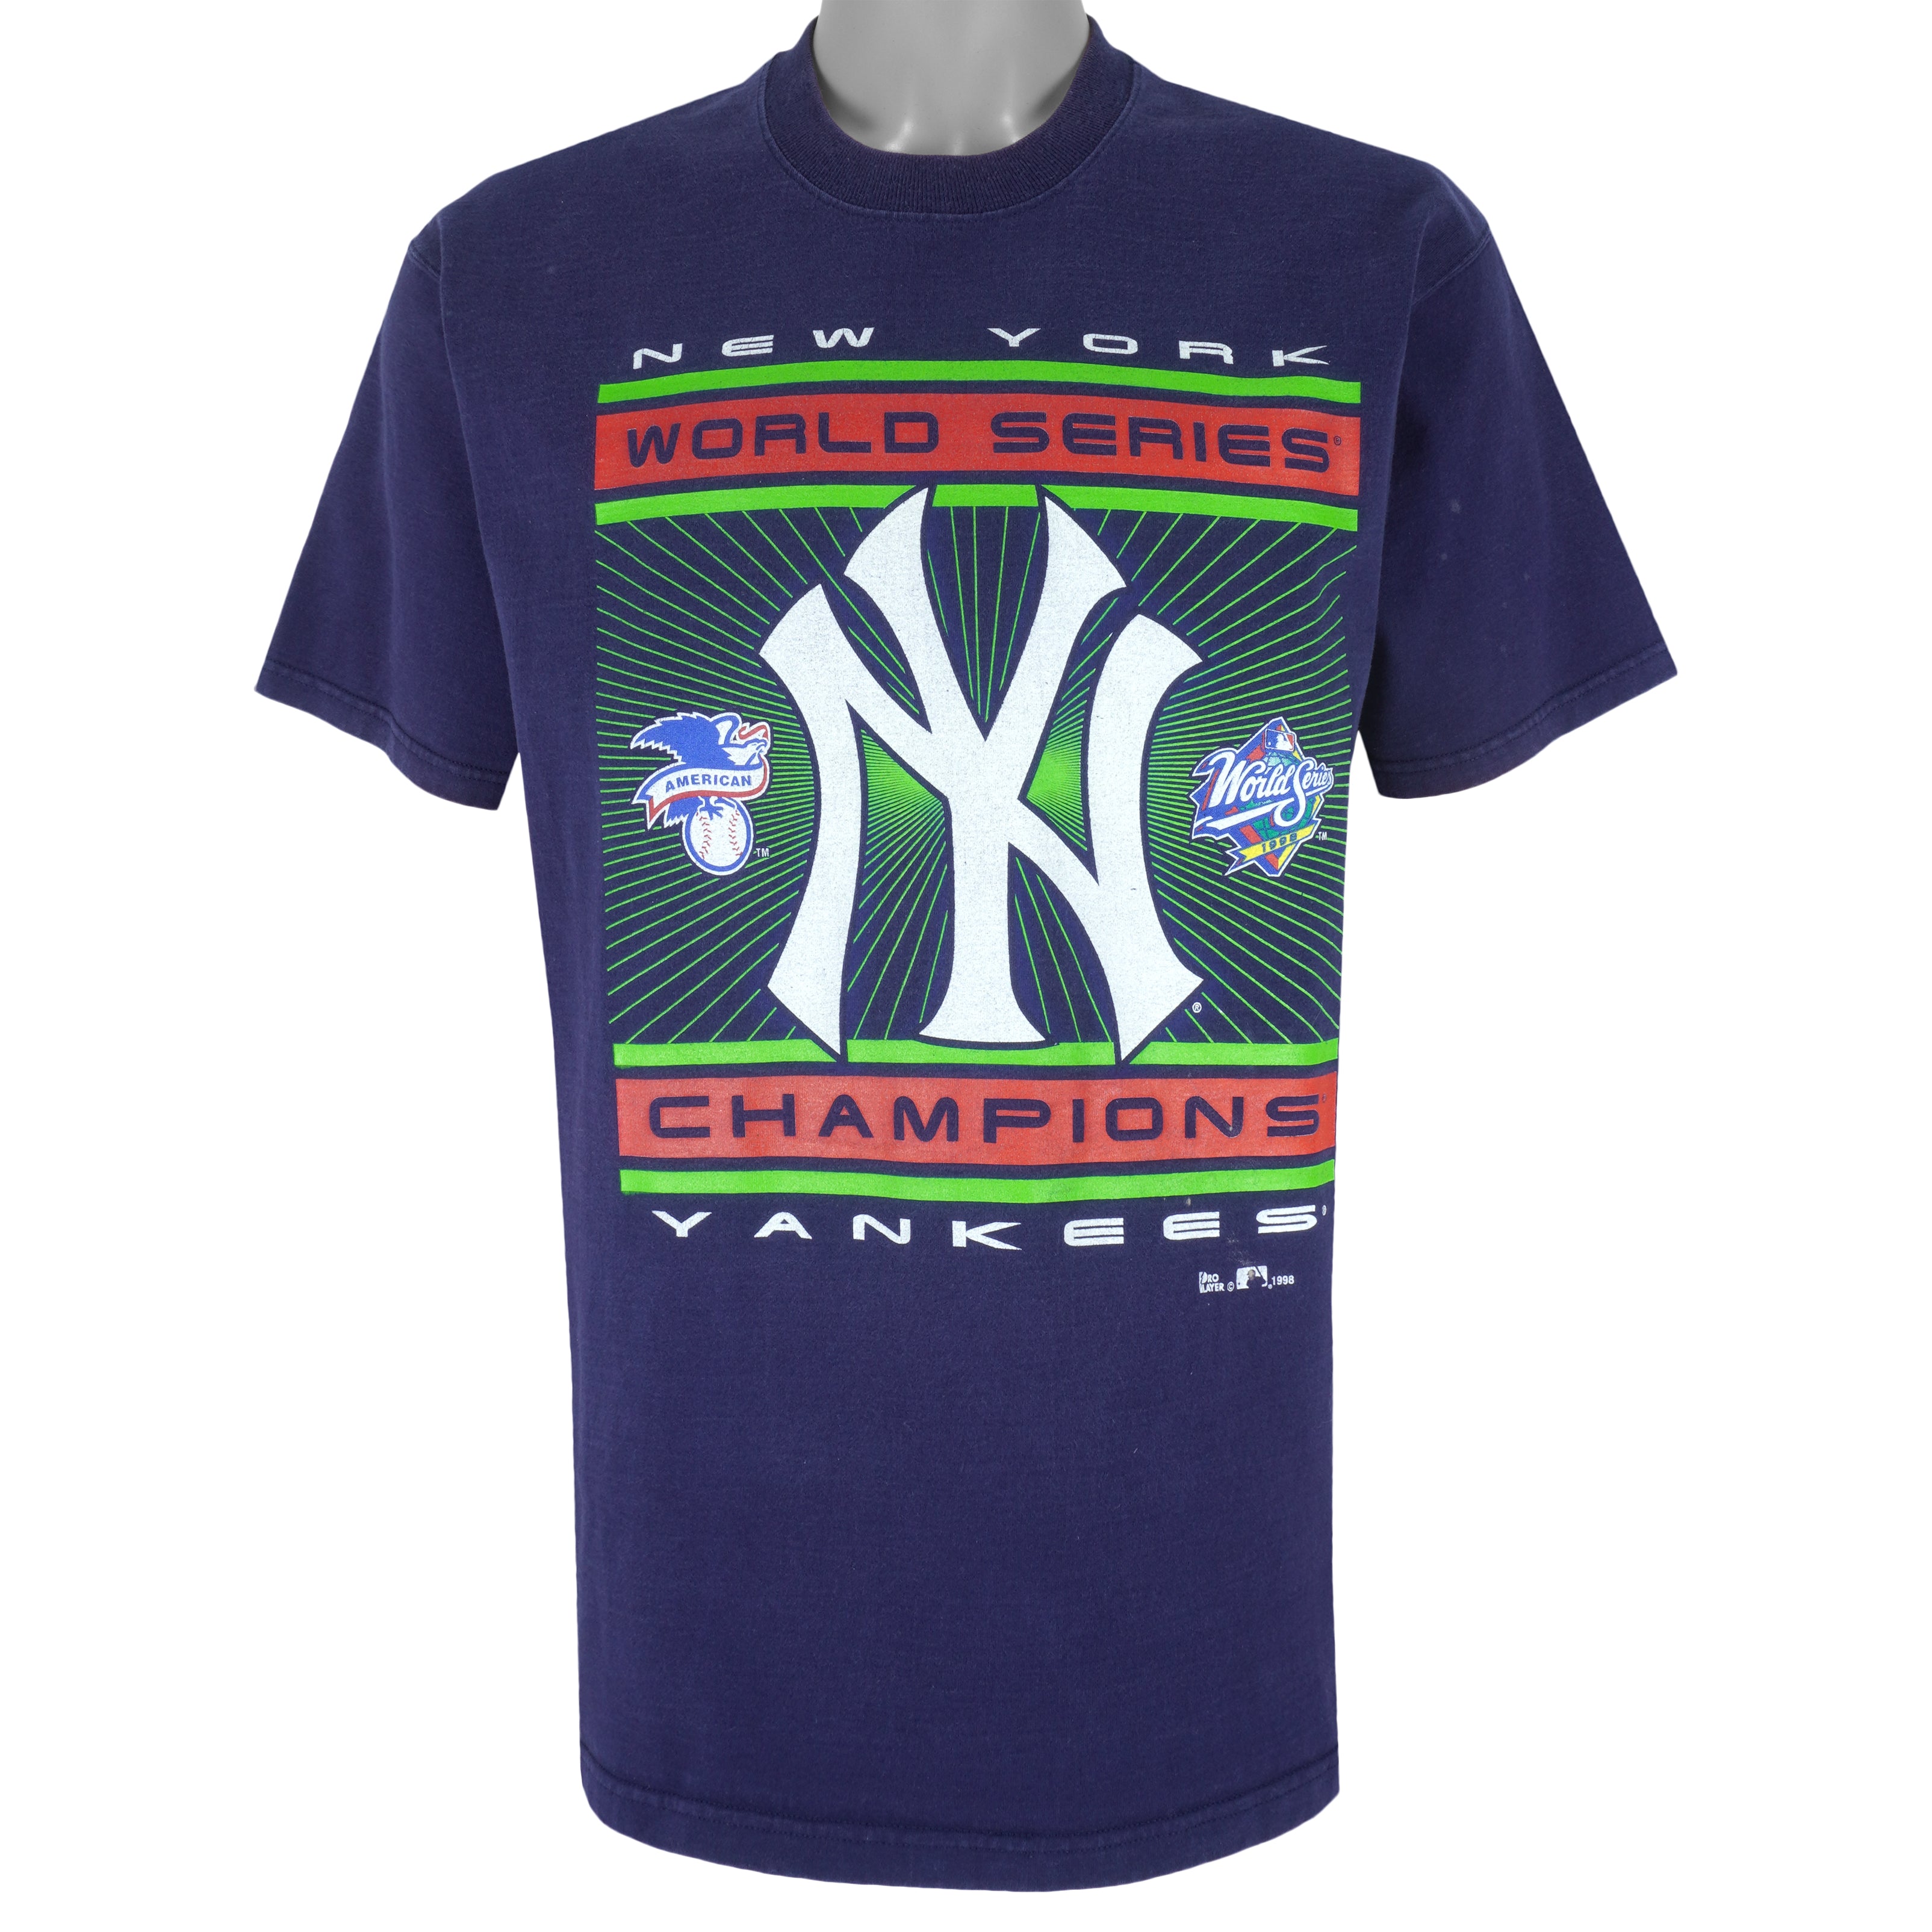 yankees 1998 world series shirt